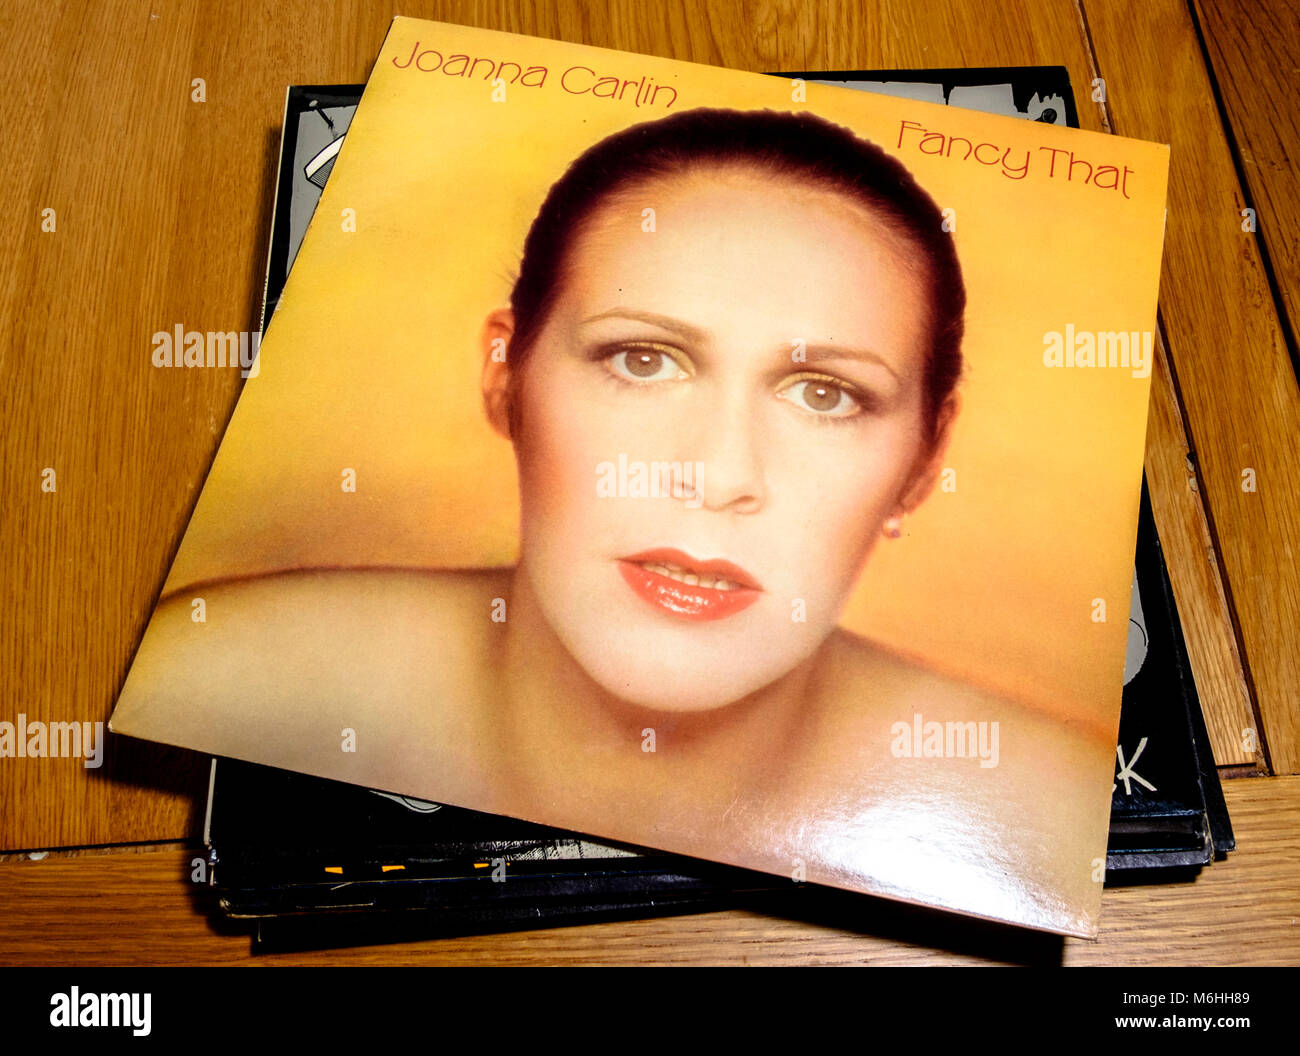 Vieilles Pochettes de disques, les disques vinyles des années 70 Melanie Harrold, ake Joanna Carlin, plaqués que Banque D'Images